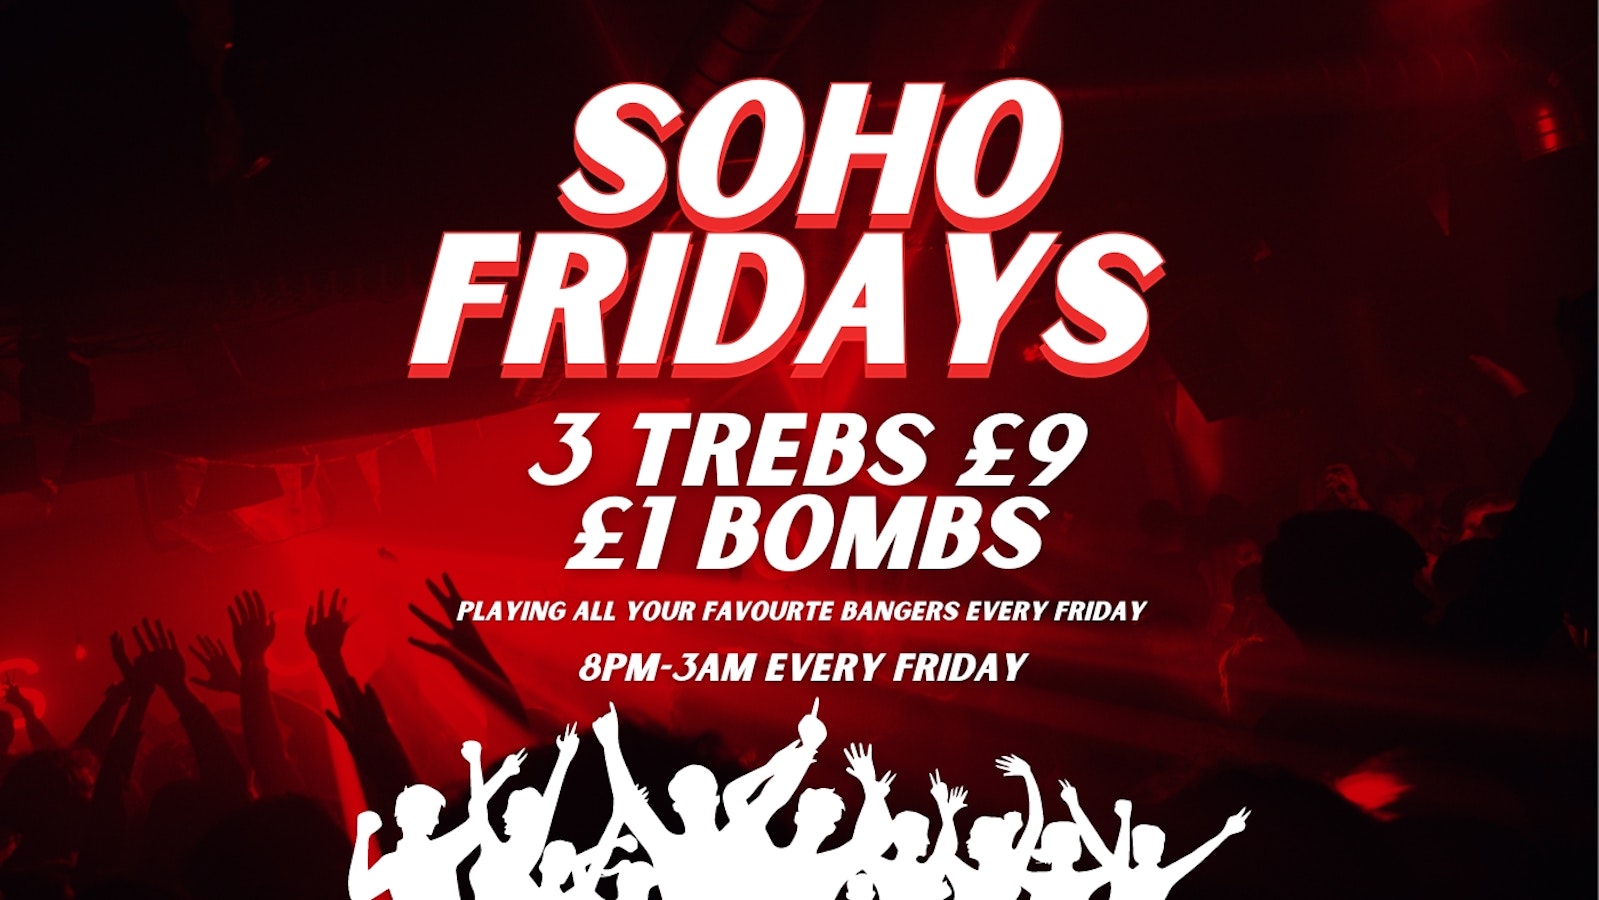 SOHO FRIDAYS | 300 TICKETS | 3 TREBS £9 + £1 BOMBS |